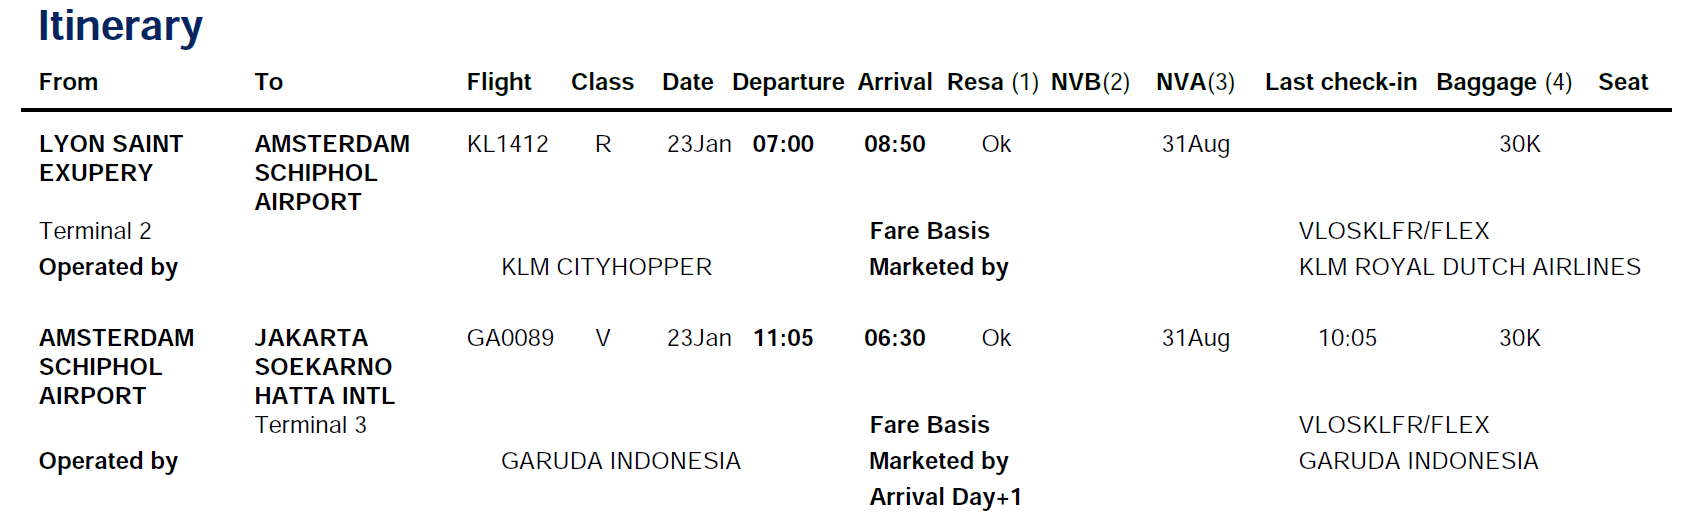 Ini rute penerbanganku yang seharusnya Lyon-Amsterdam-Jakarta